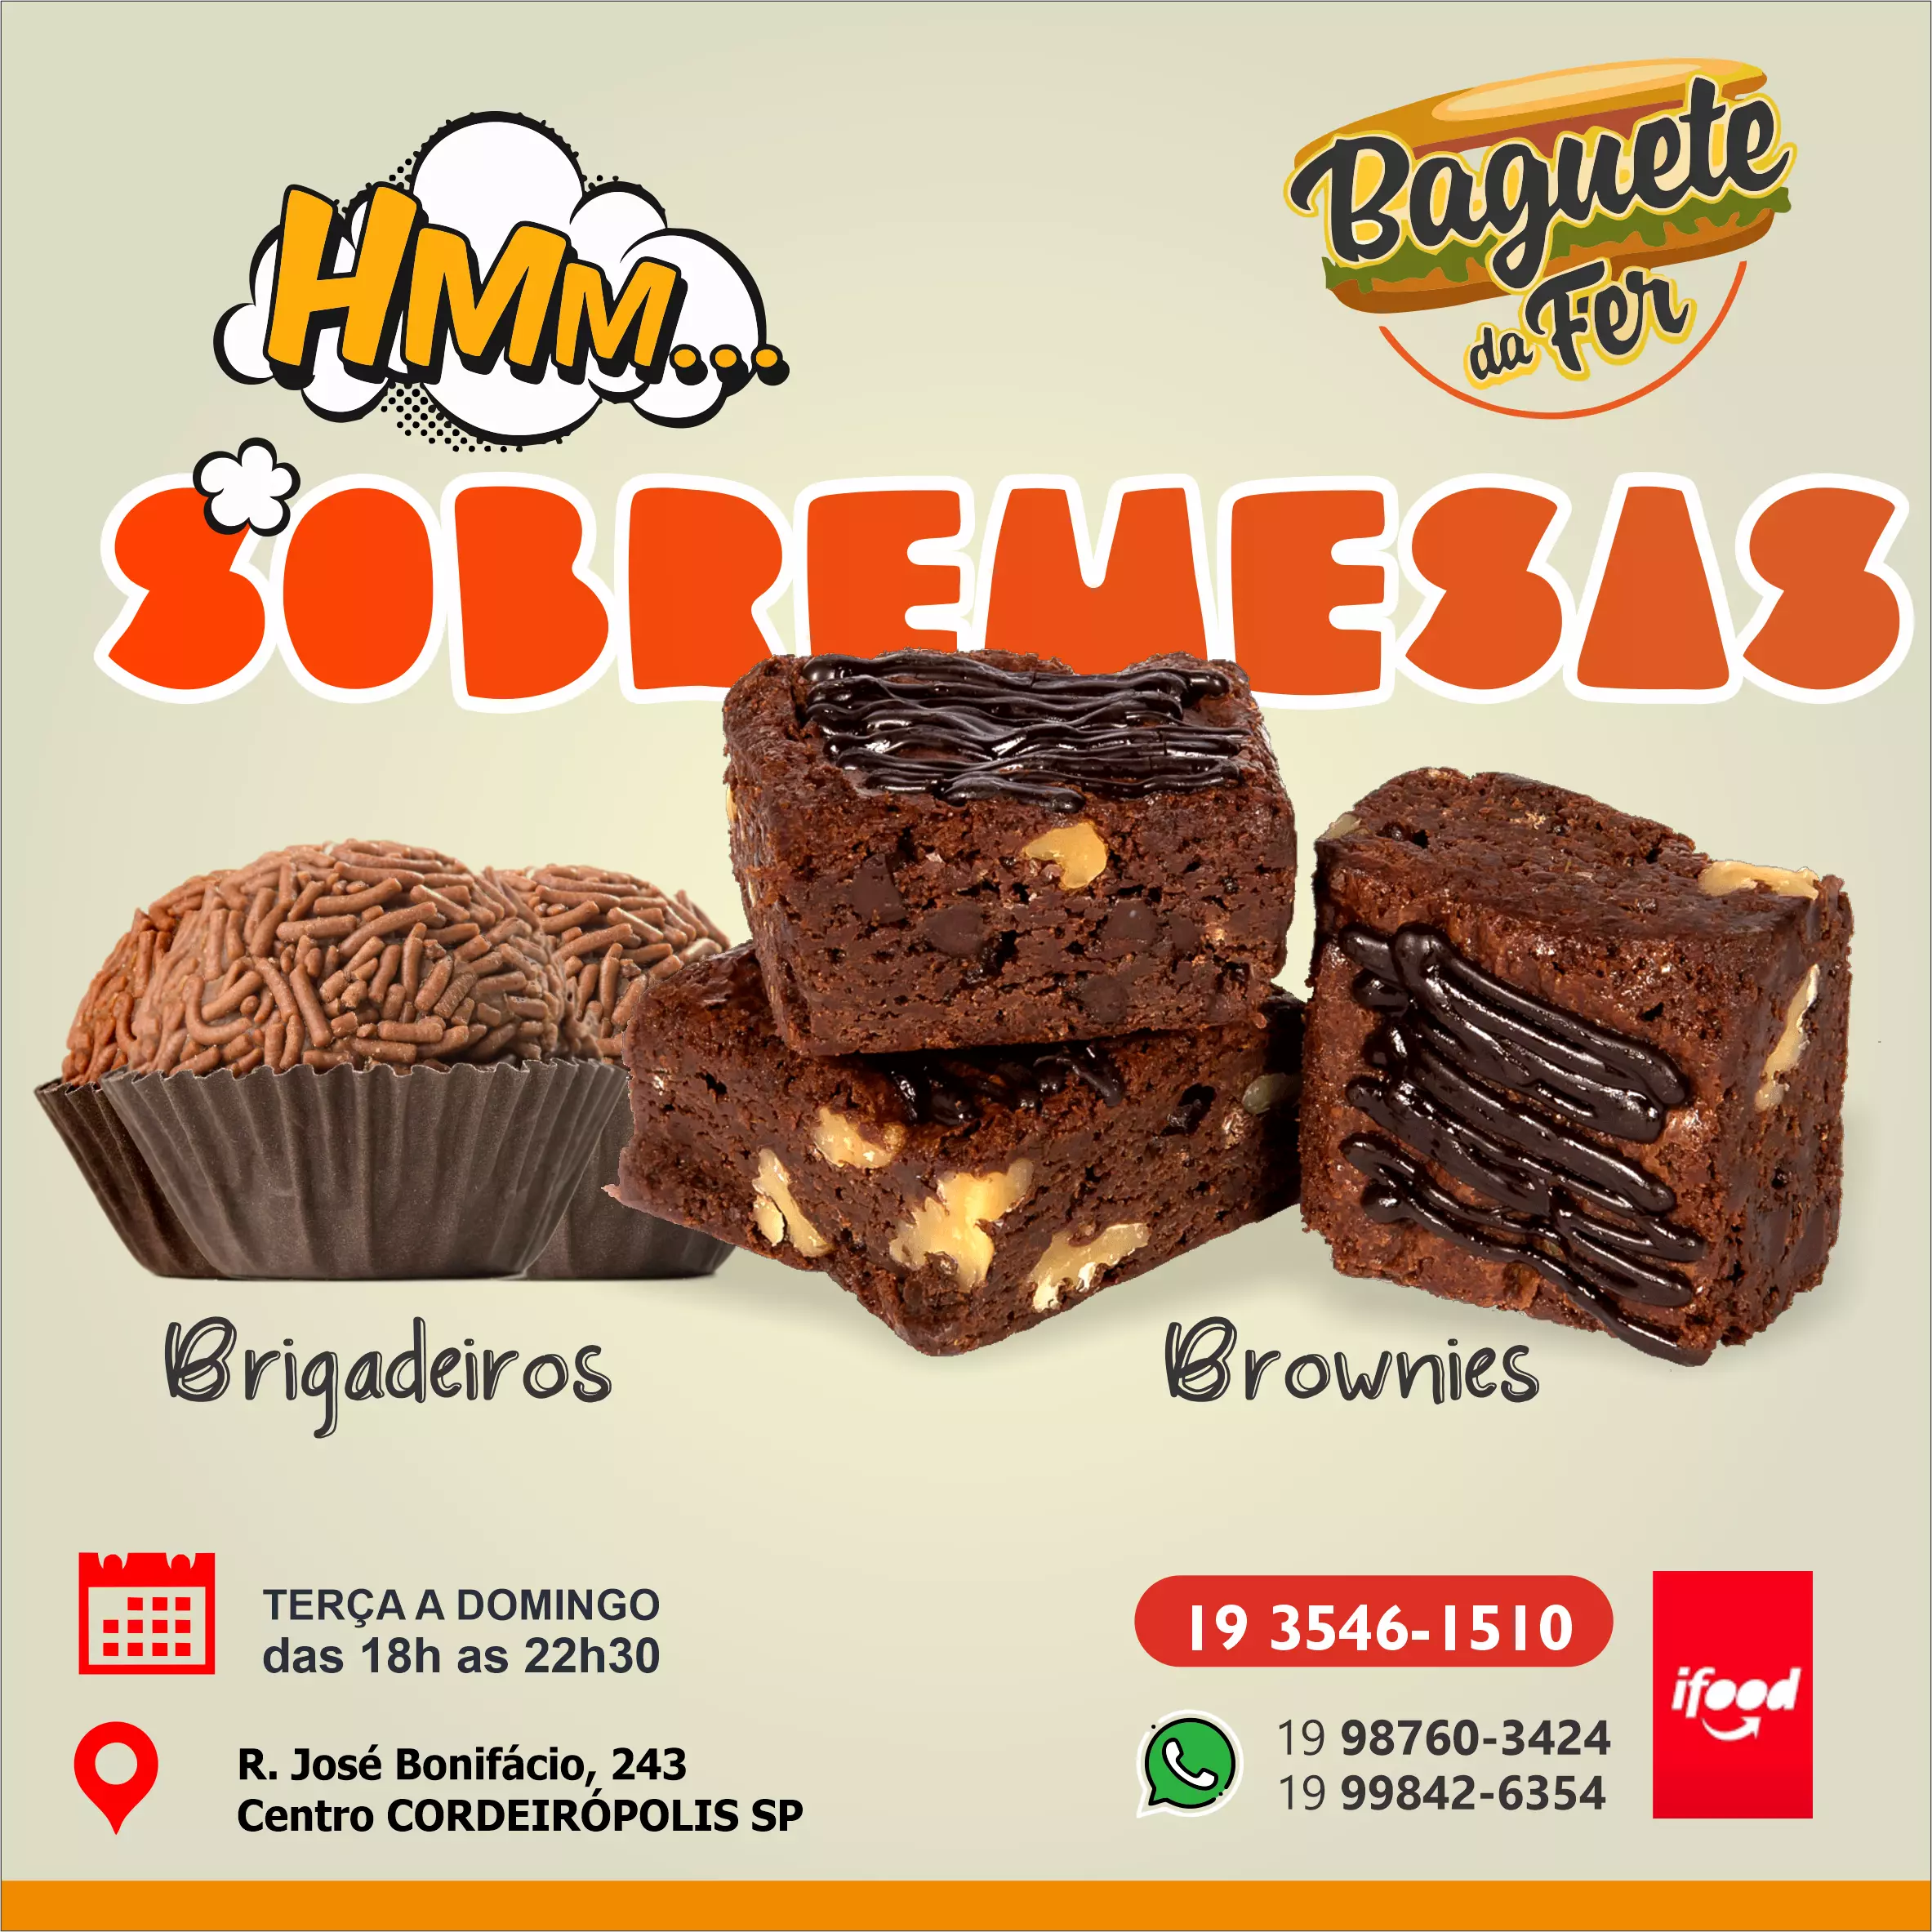 
Propaganda sobremesas Brigadeiro e Brownies em Lanchonete



